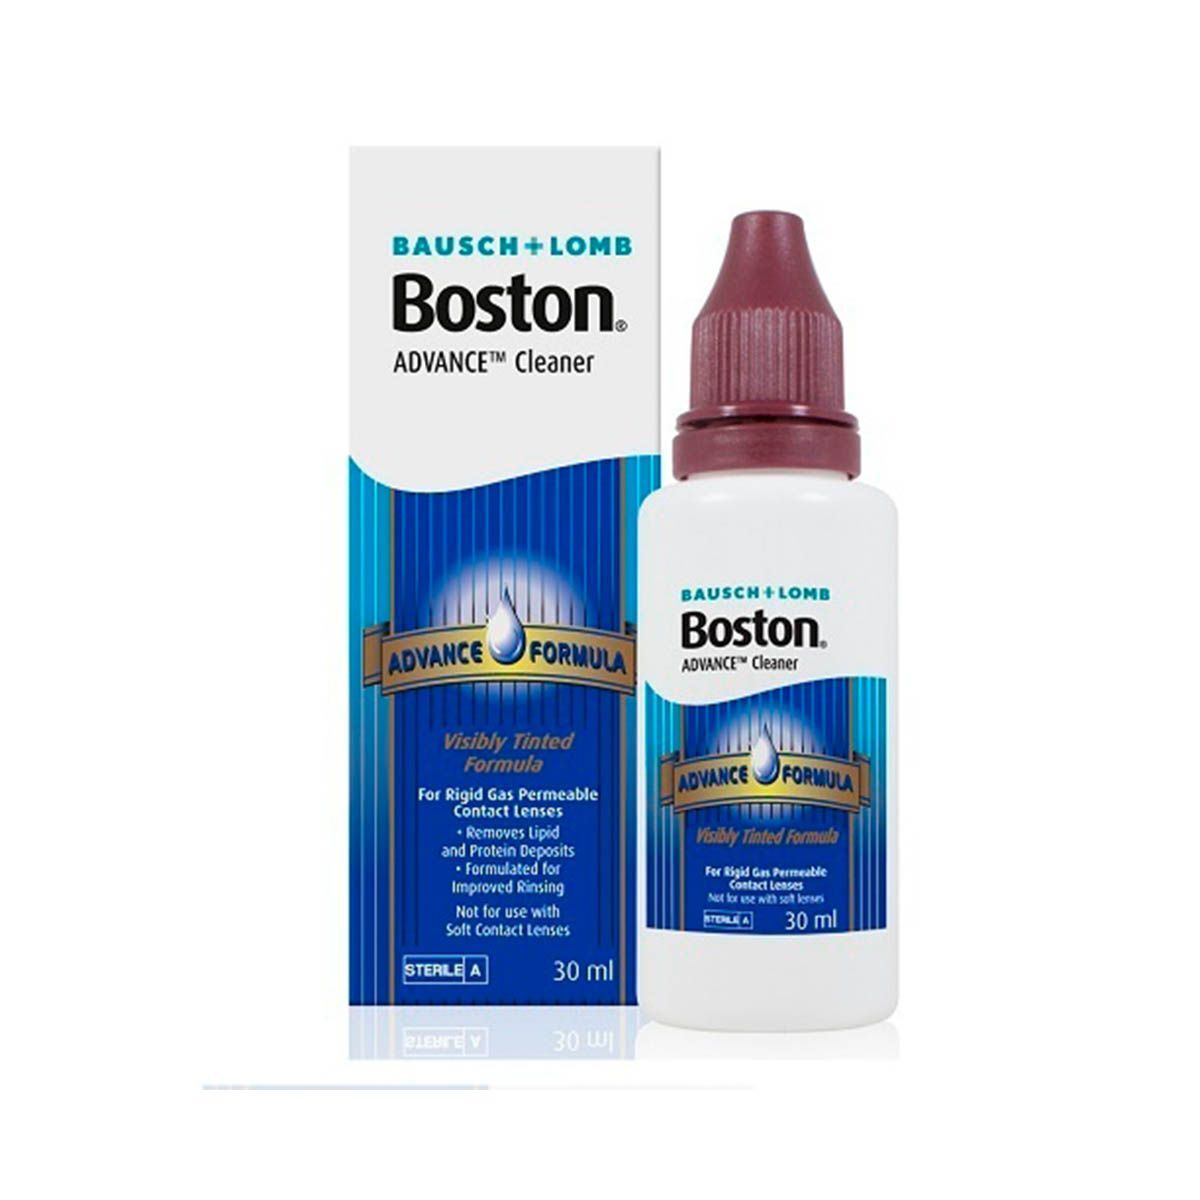 Раствор для жестких газопроницаемых контактных линз BAUSCH+LOMB Boston ADVANCE Cleaner, многофункциональный #1